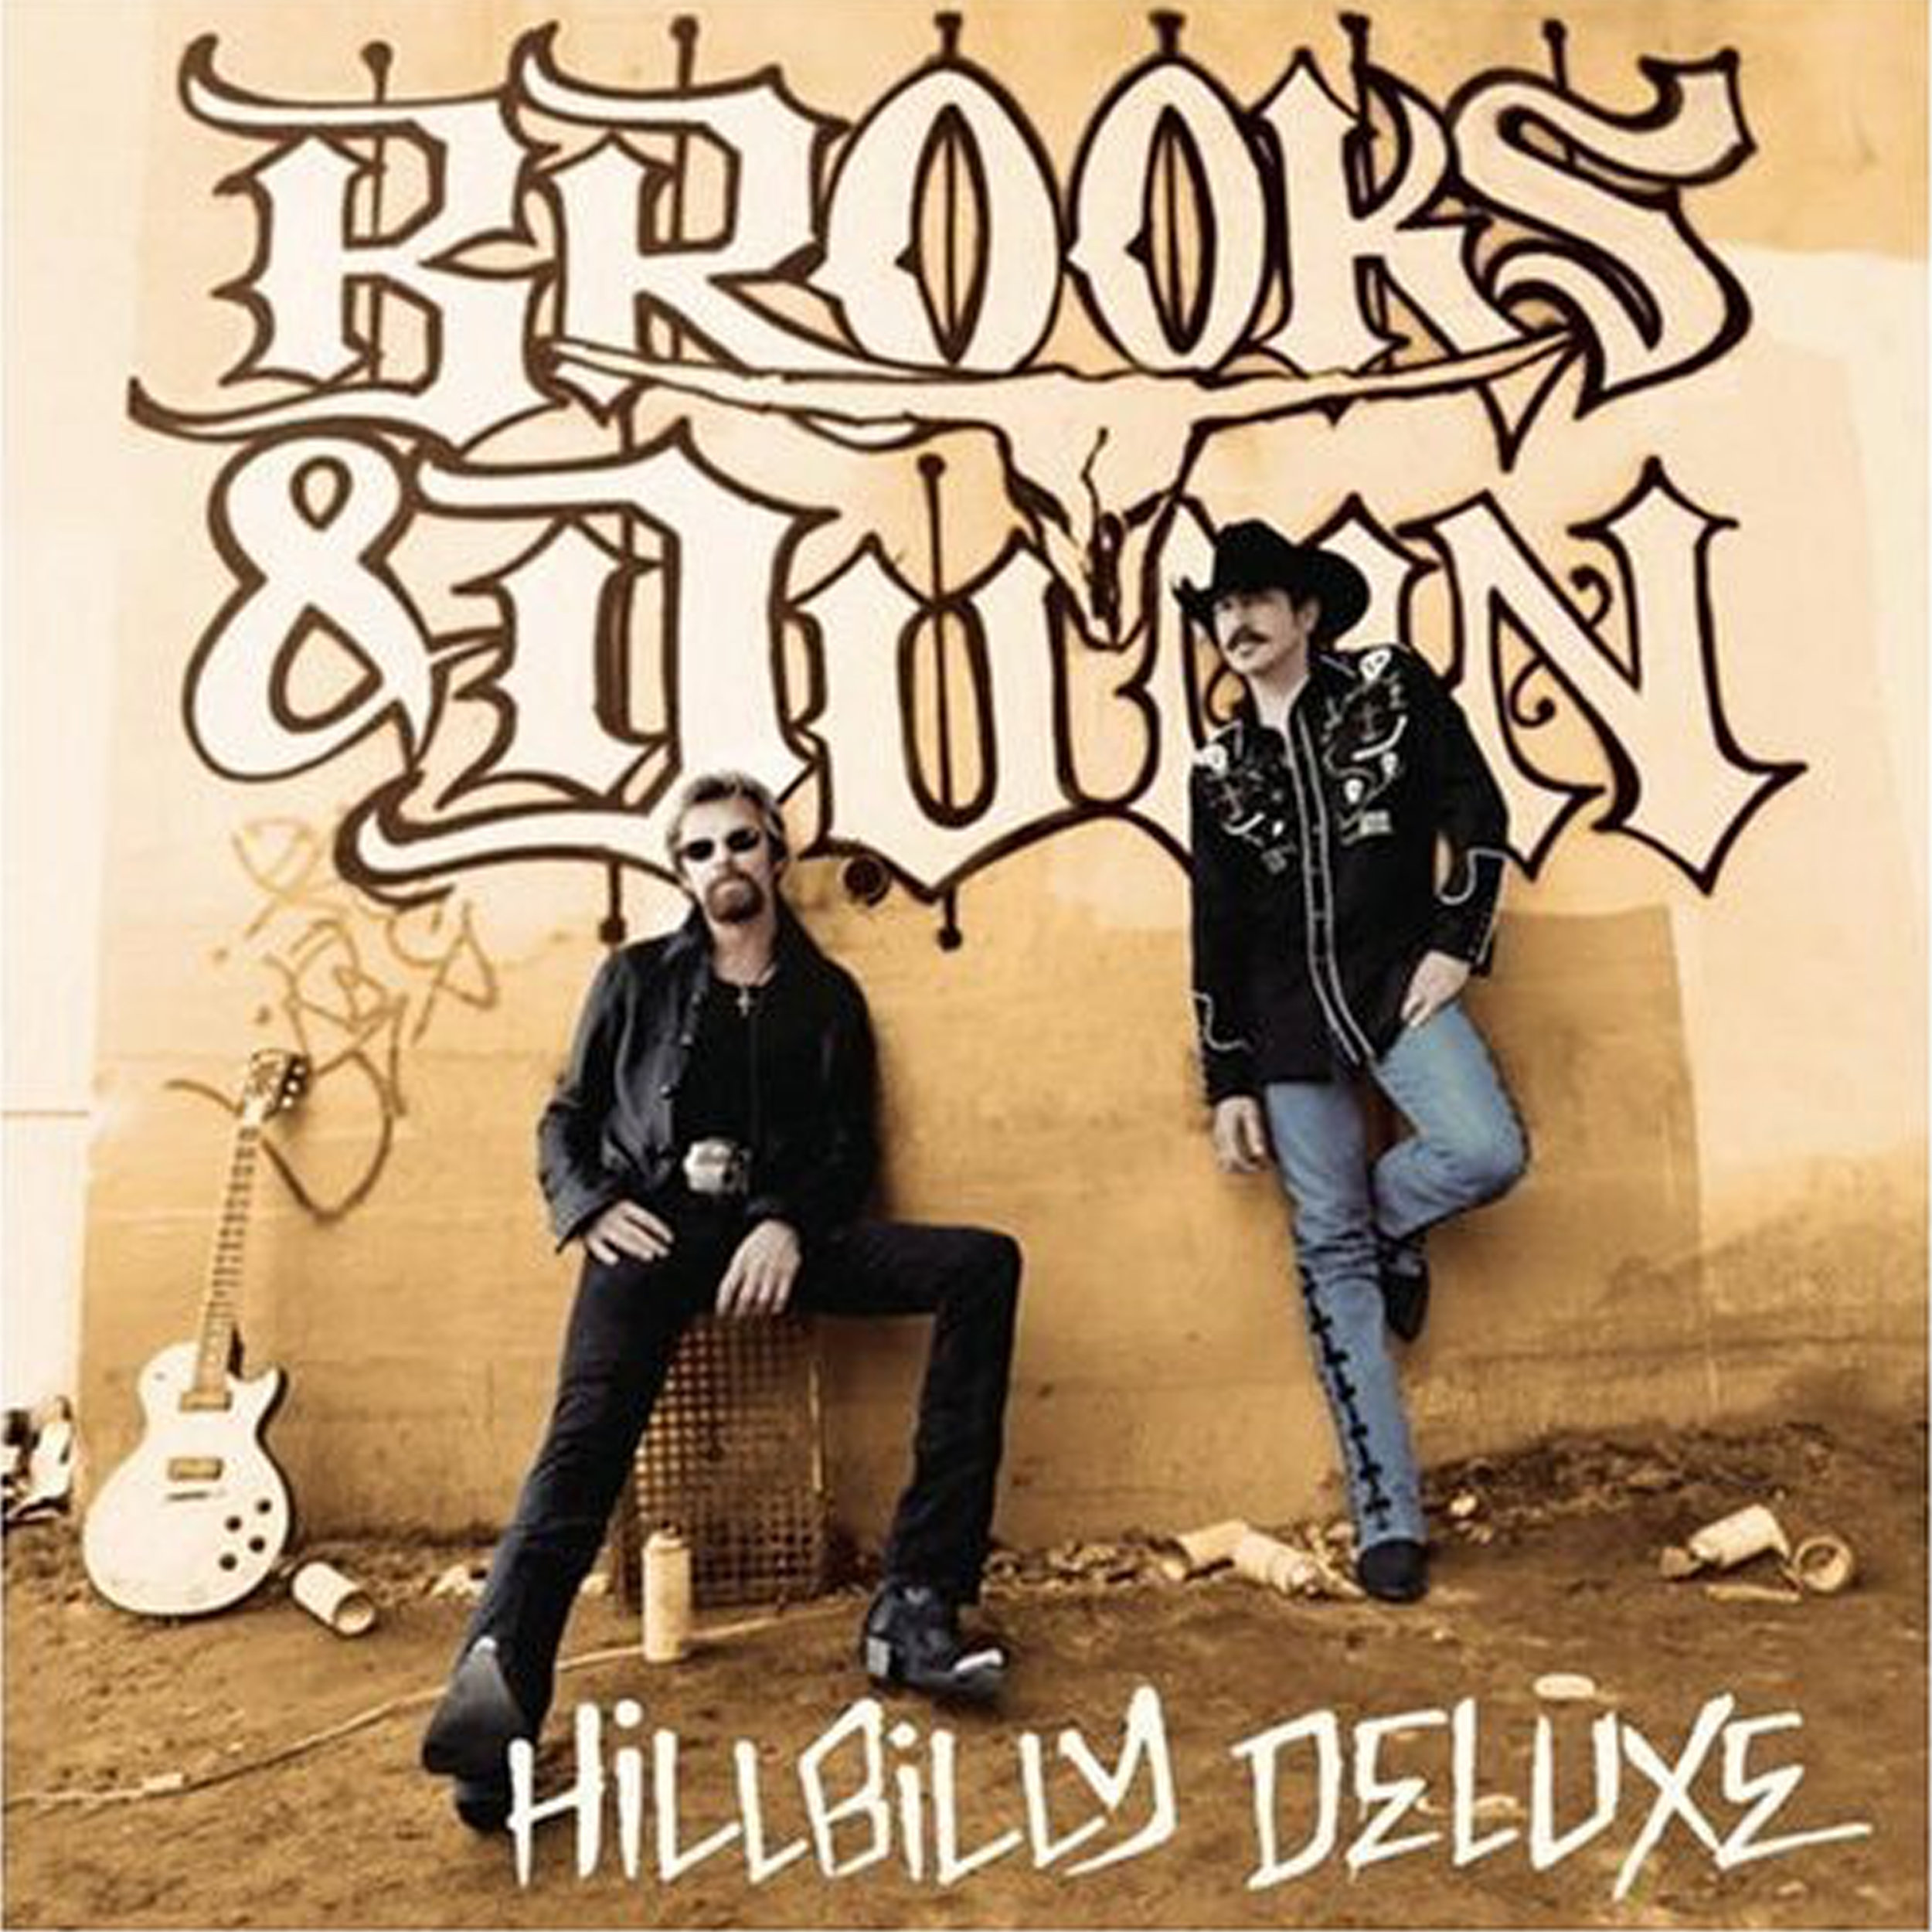 Brooks and Dunn Hillbilly Deluxe.jpg